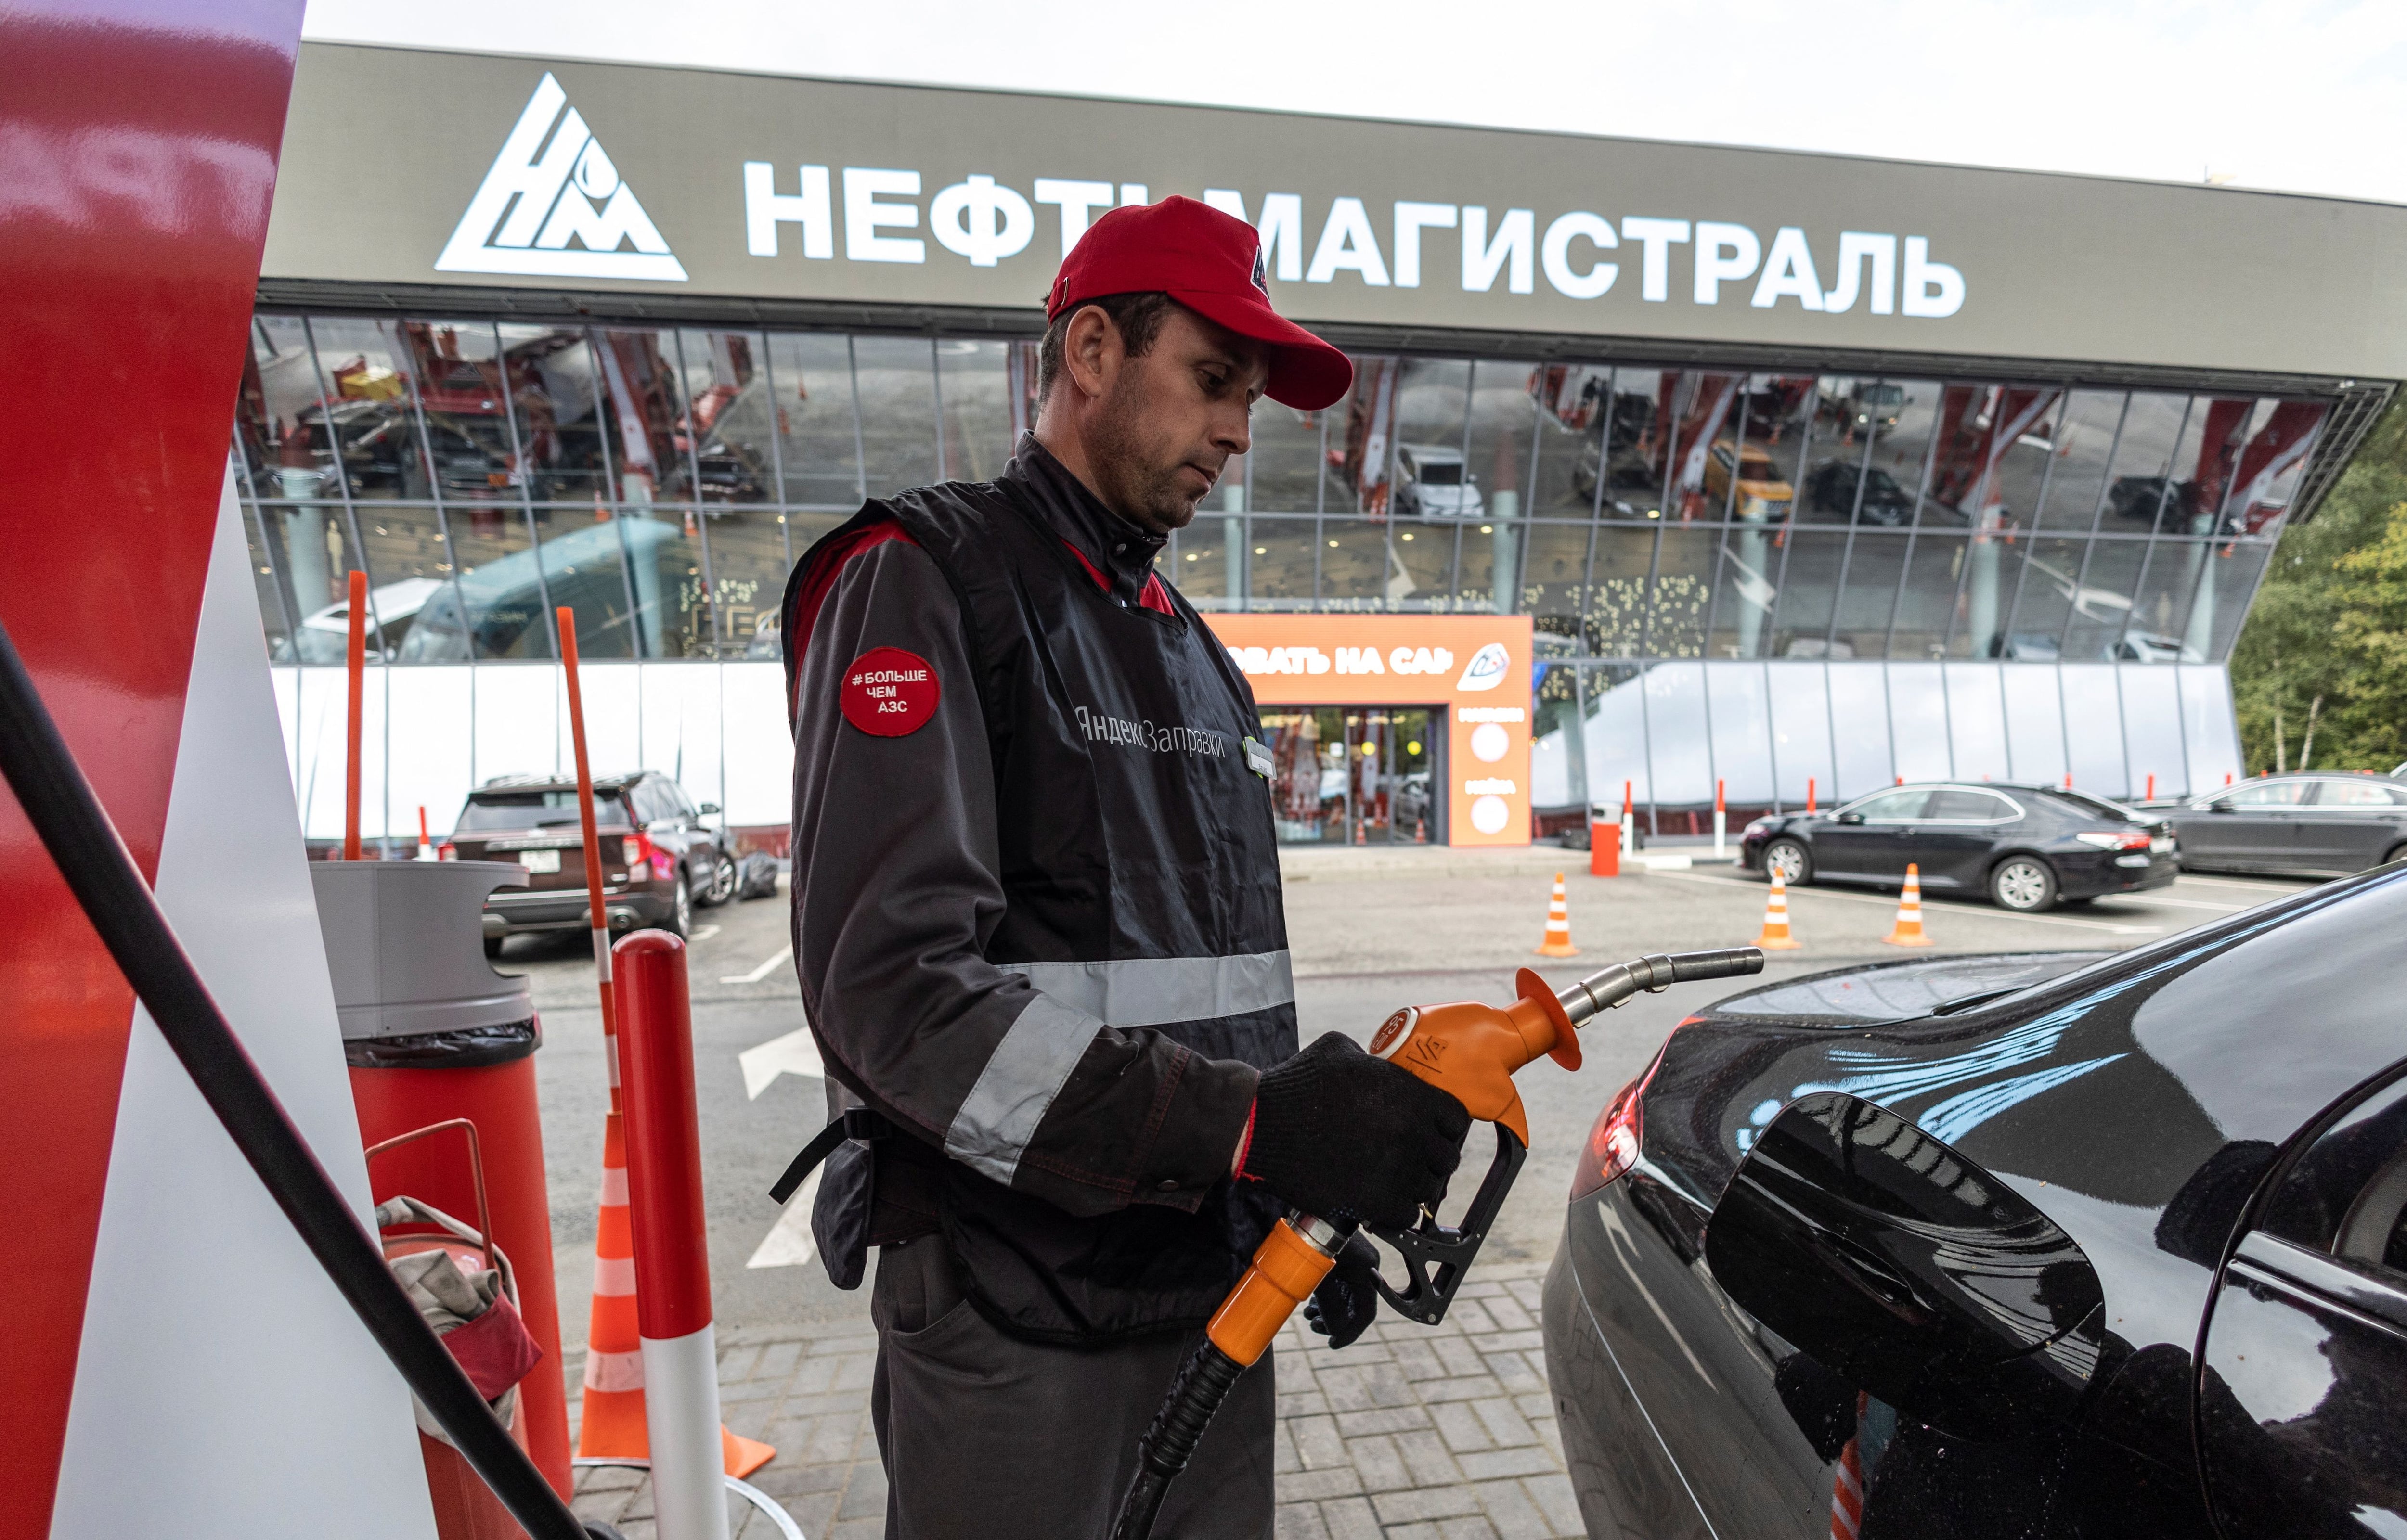 Un surtidor de gasolina en Moscú.  Los precios al por mayor se han disparado, aunque los precios al por menor tienen un tope para intentar contenerlos en línea con la inflación oficial. (REUTERS/Maxim Shemetov)